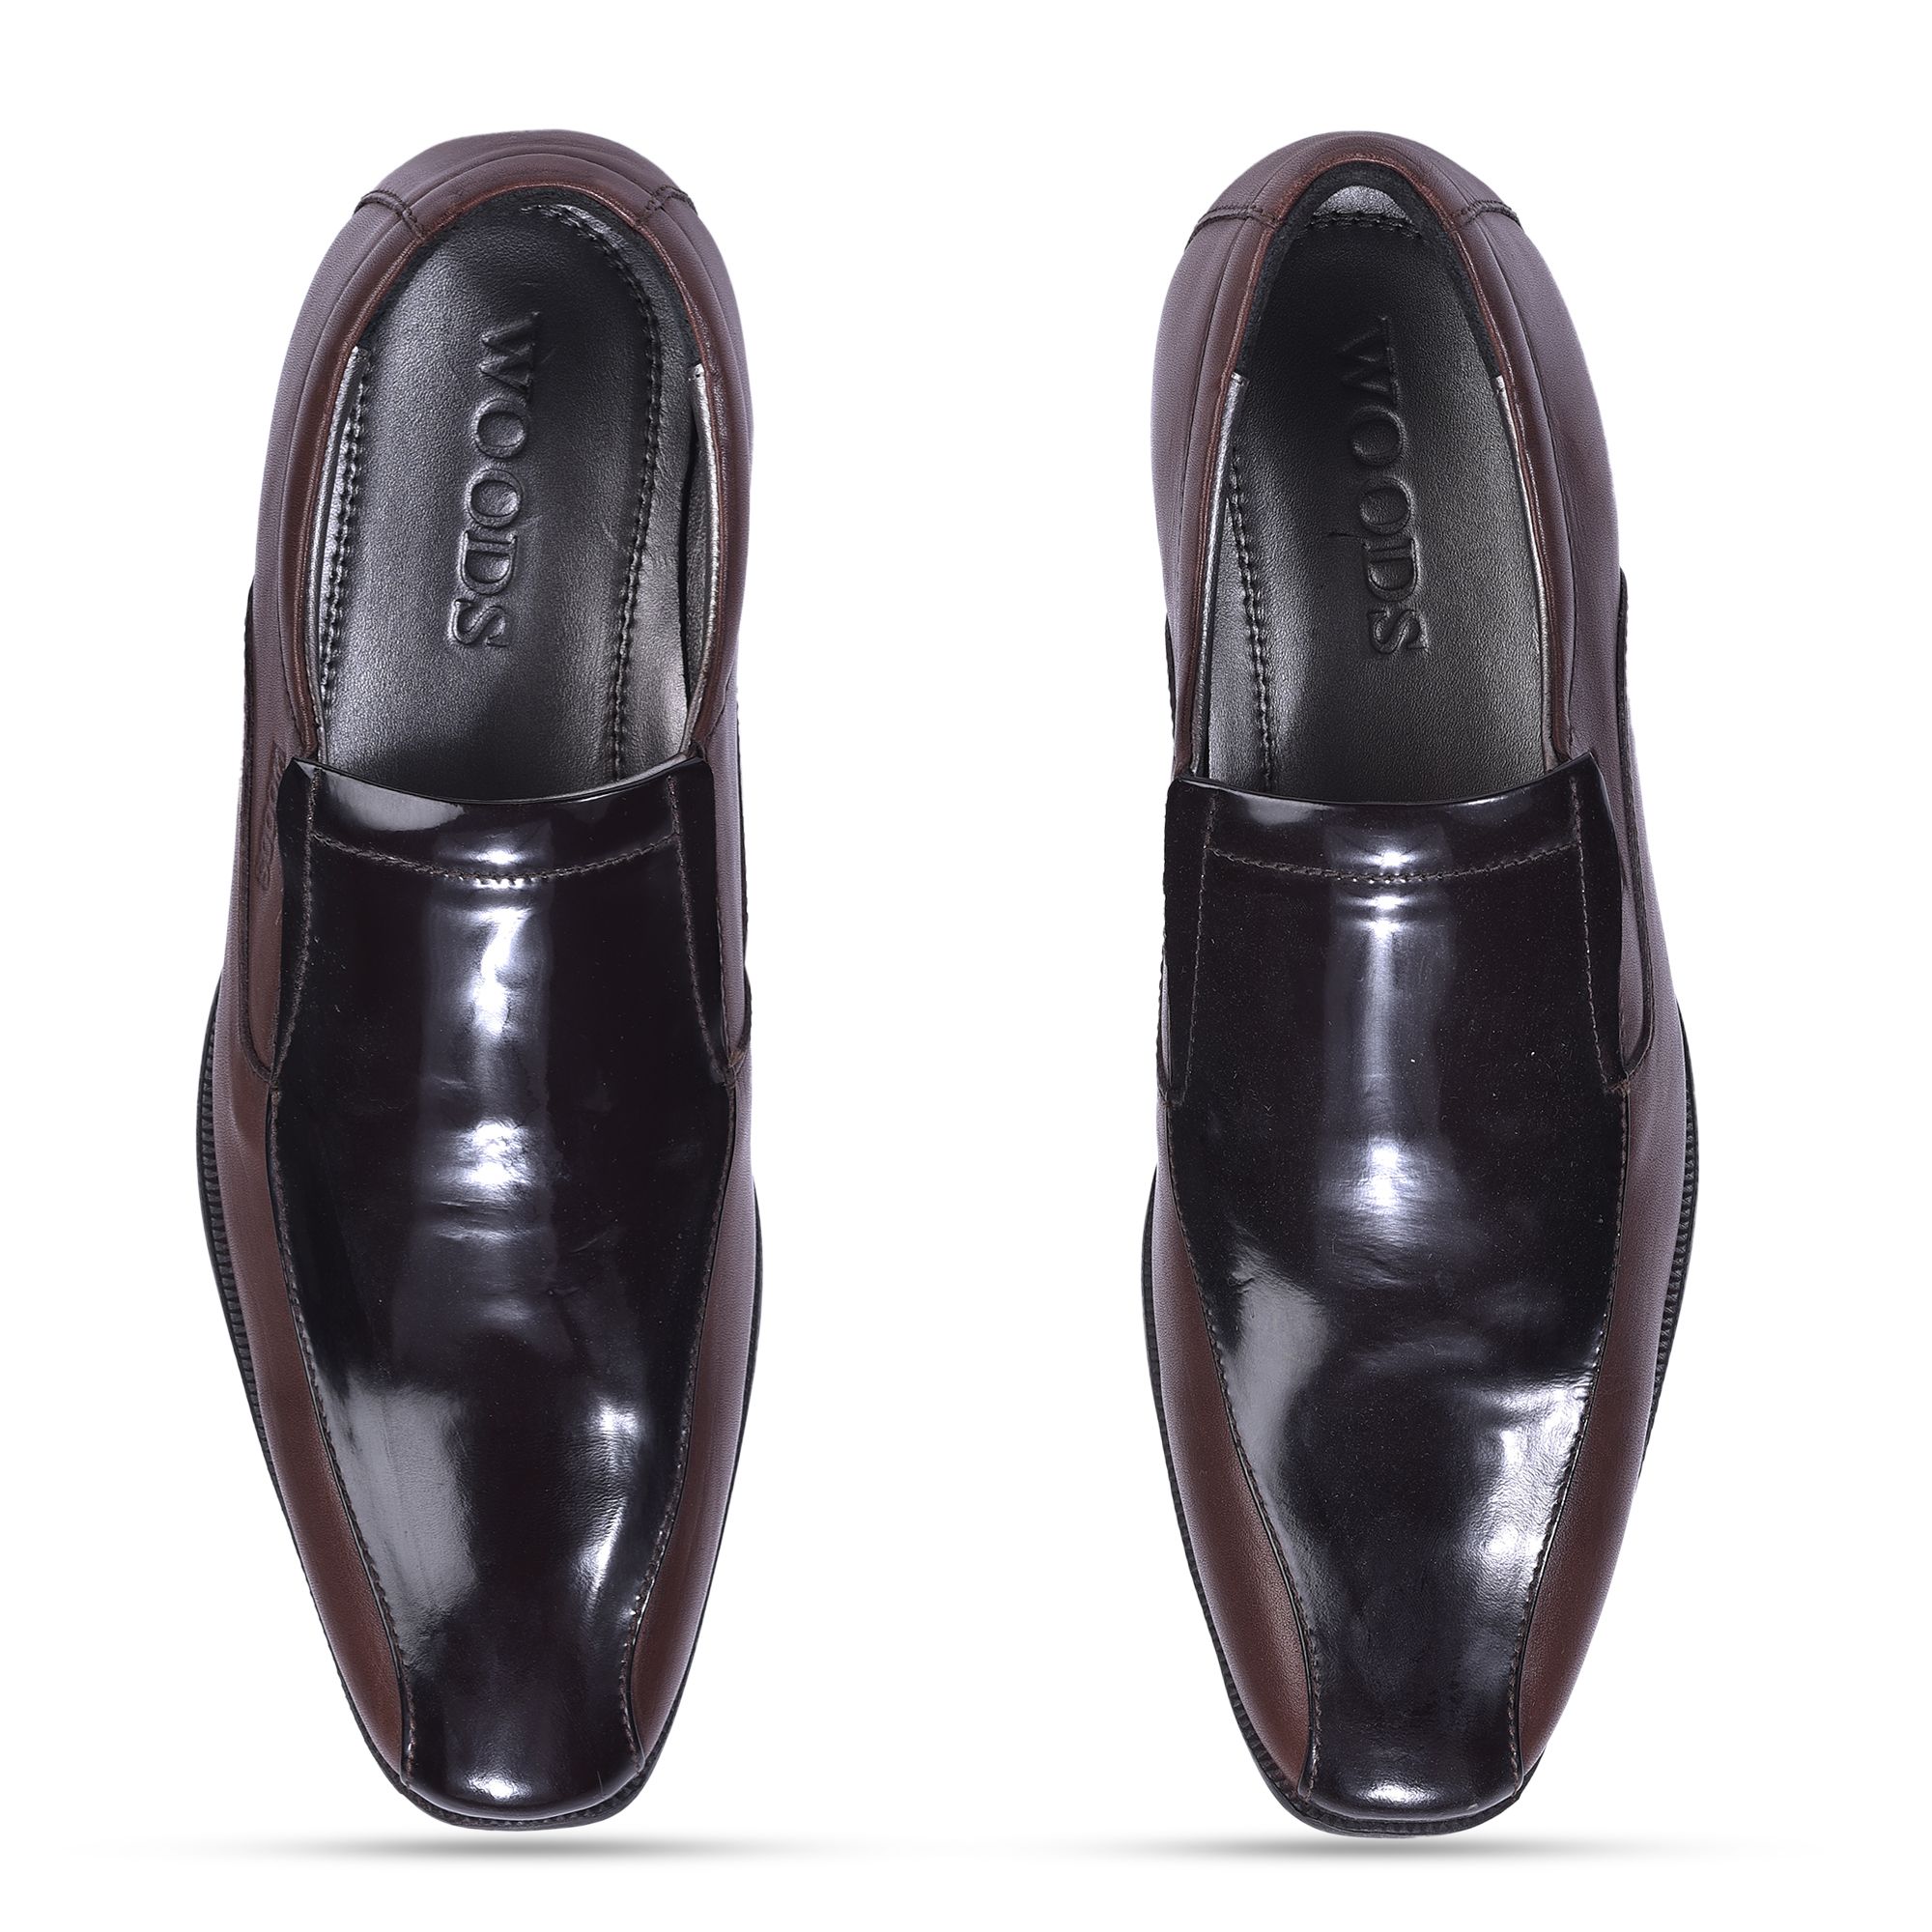 Brown slip-on formal shoes for men